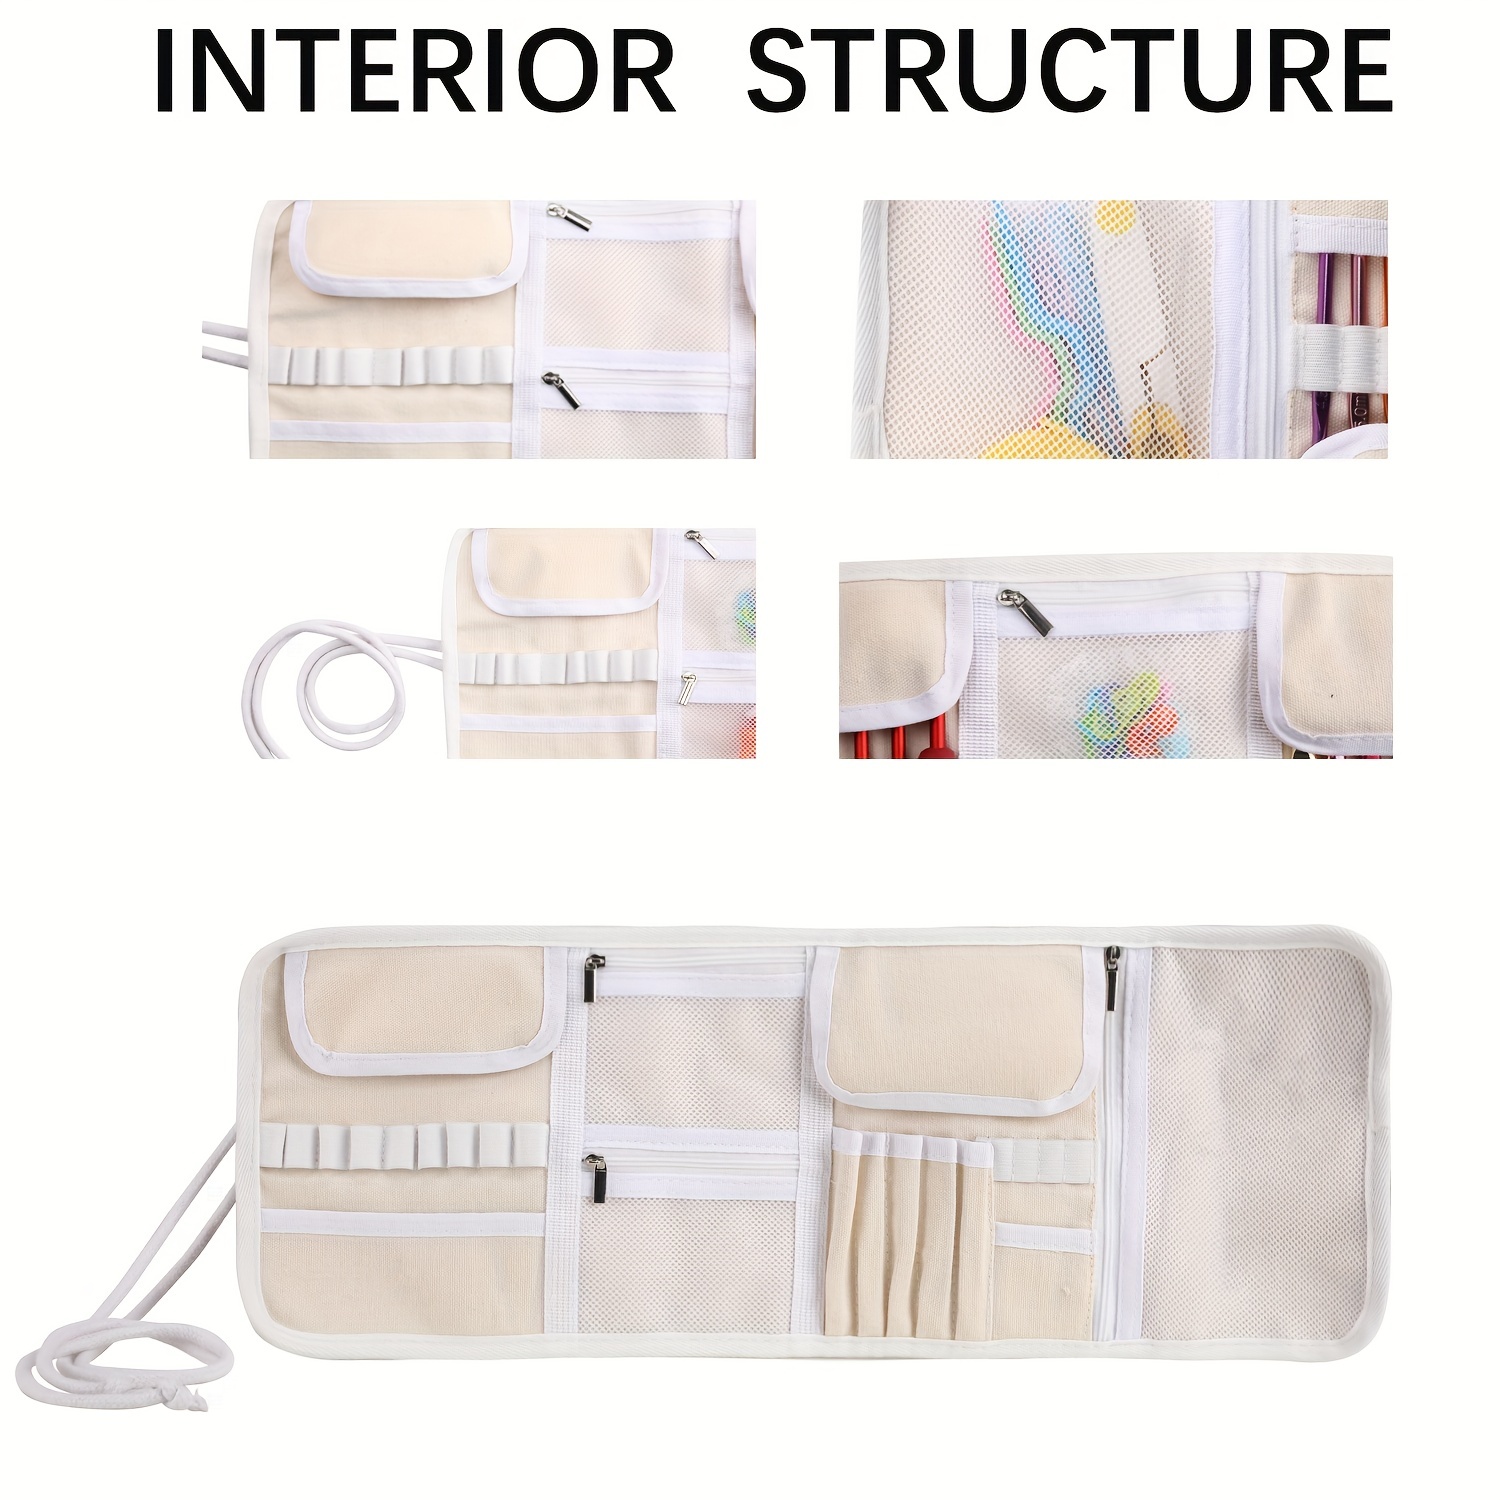 Crochet Hook Case / Organizer / Holder for Standard or Ergonomic